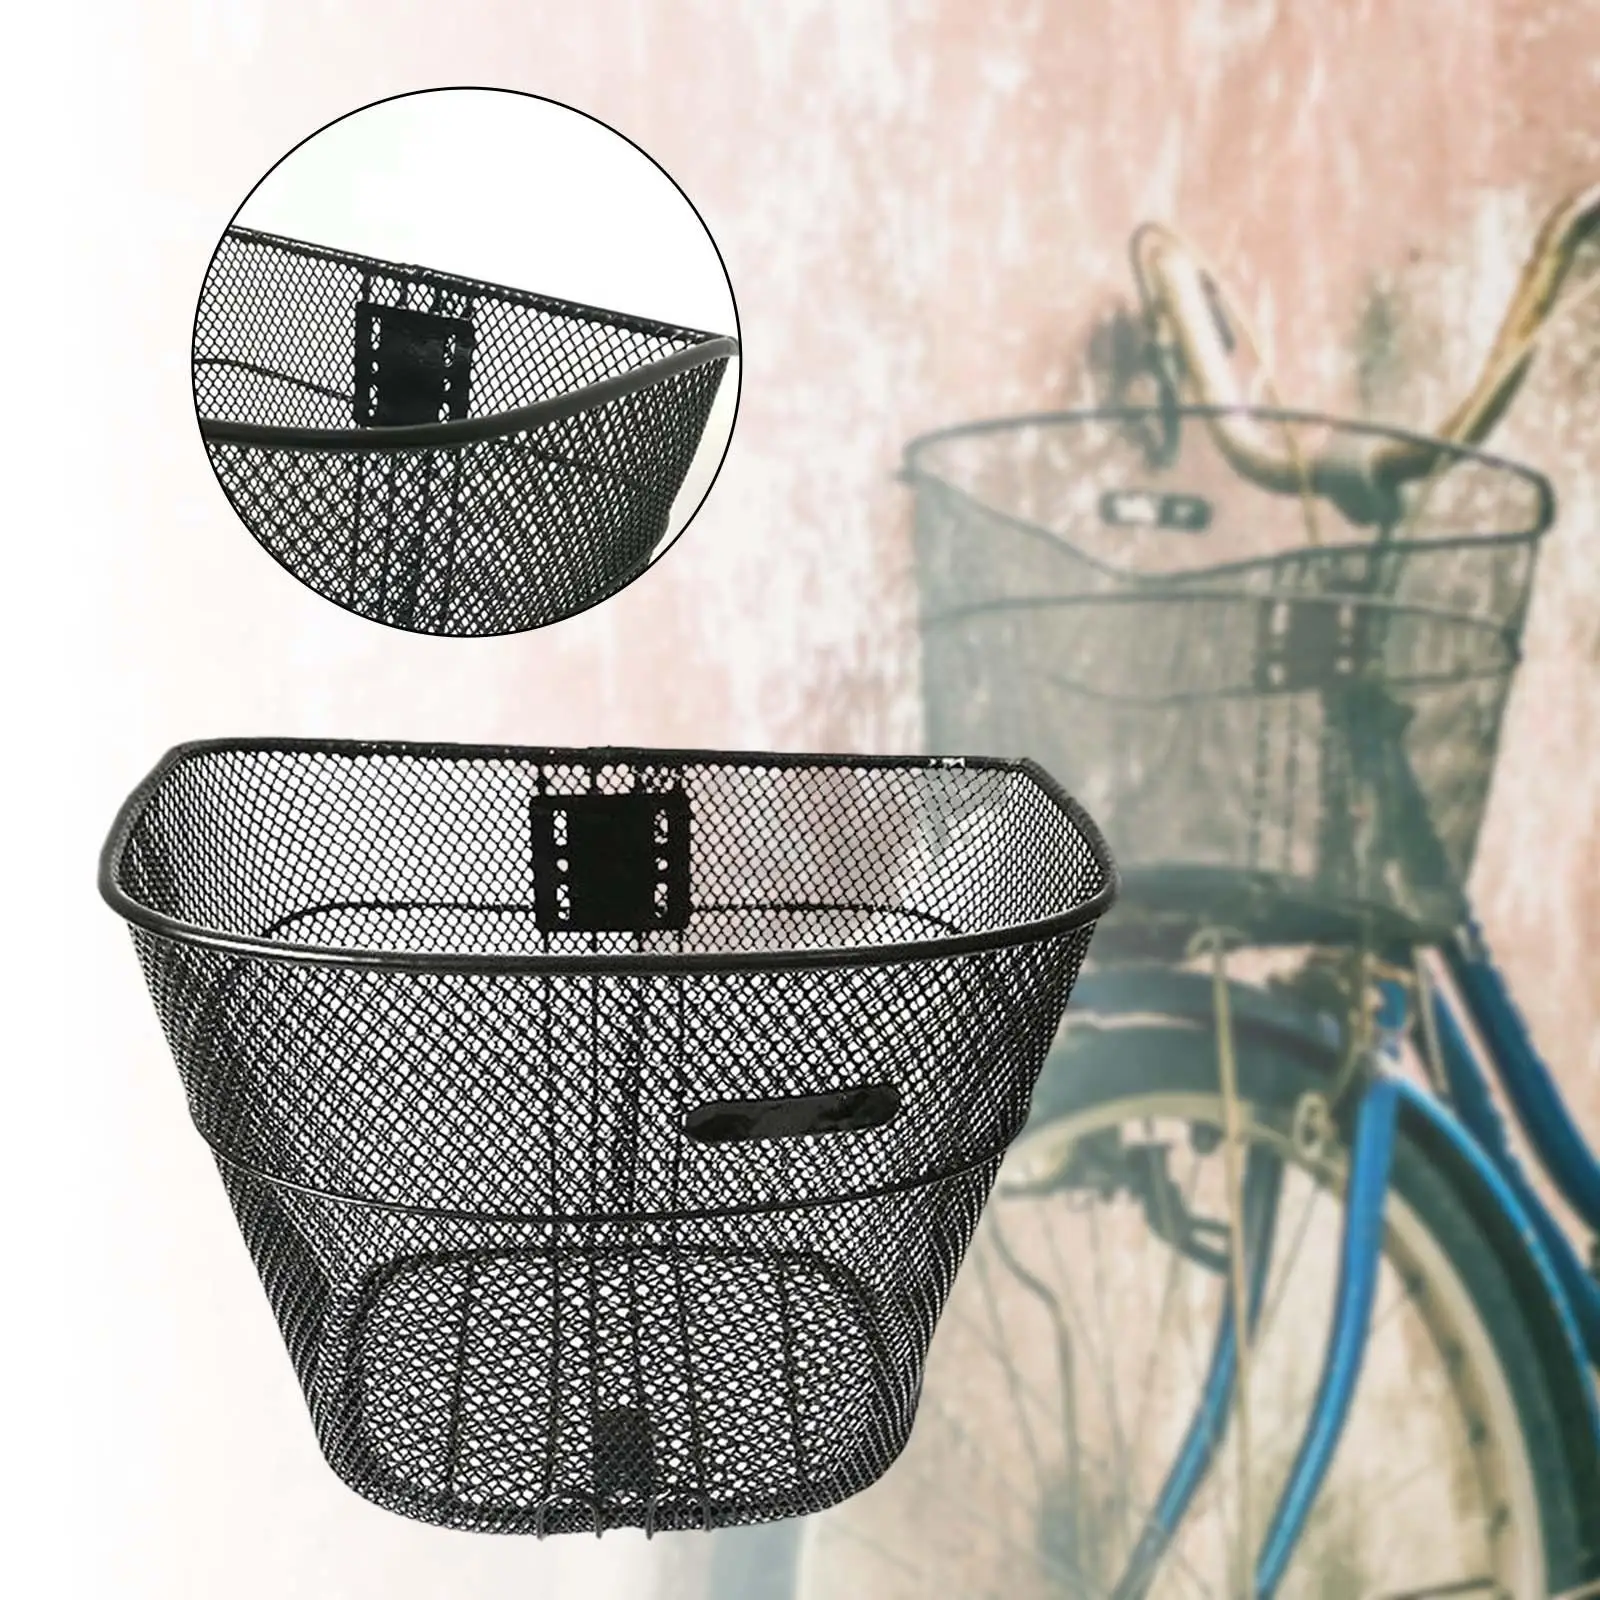 Bike Basket Removable Sundries Container Front Handlebar Basket Bike Front Basket for Riding